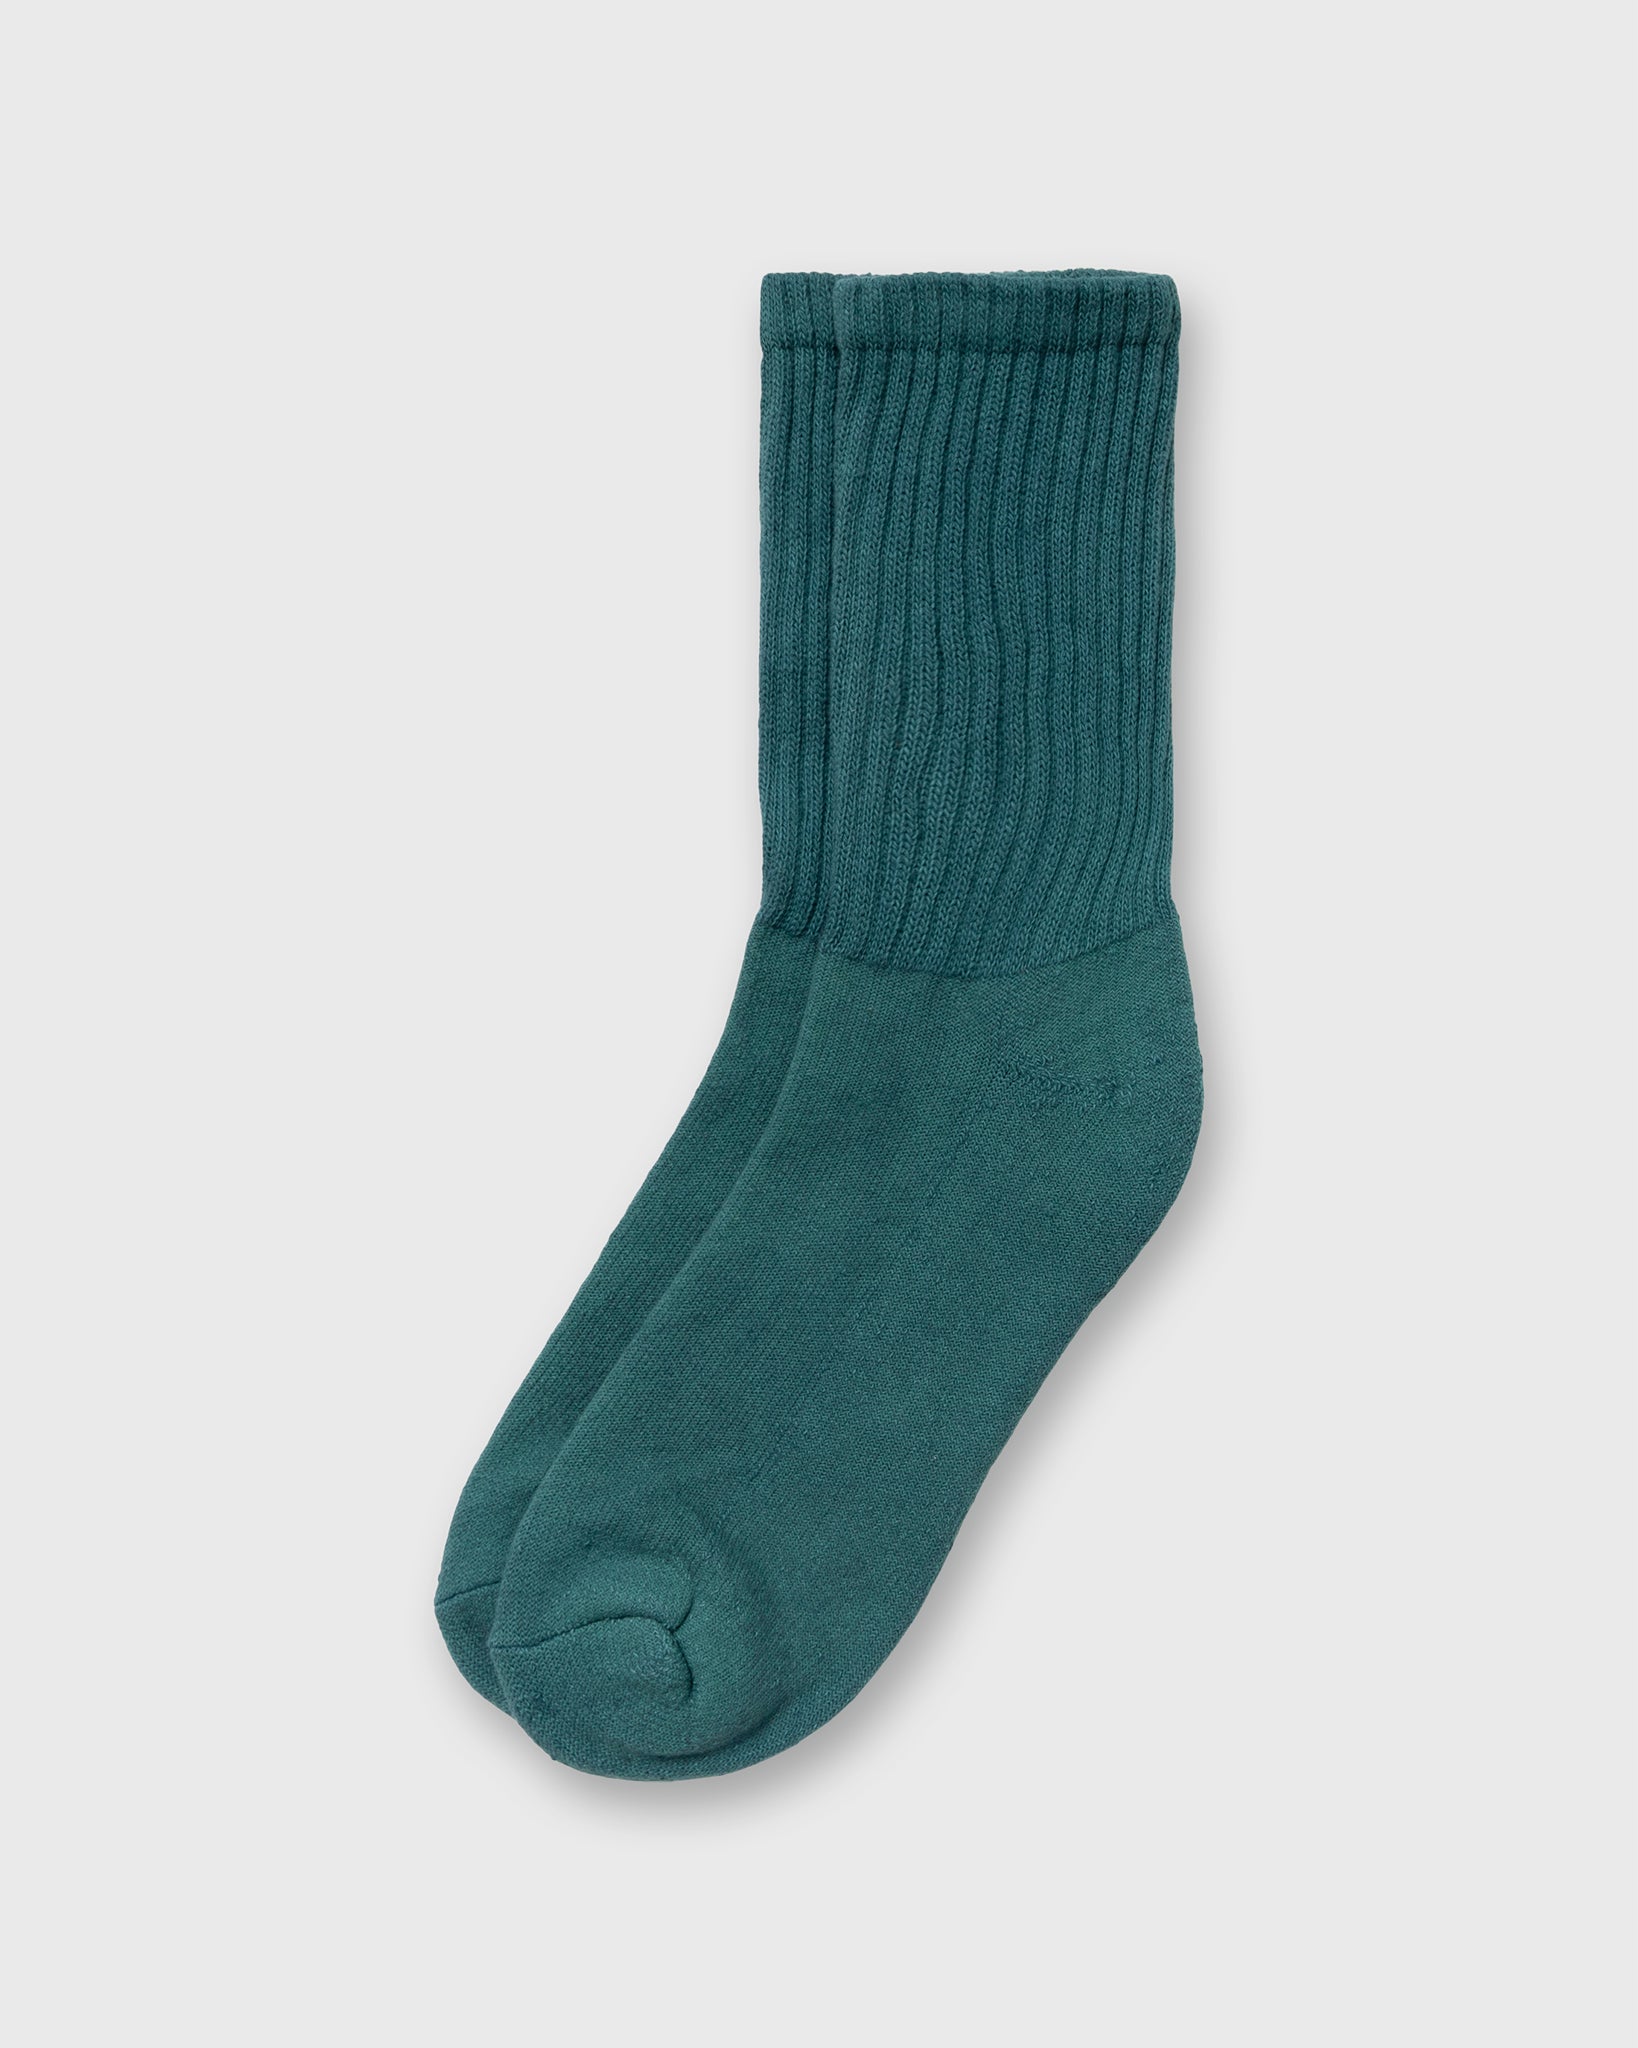 Retro Solid Socks in Spruce